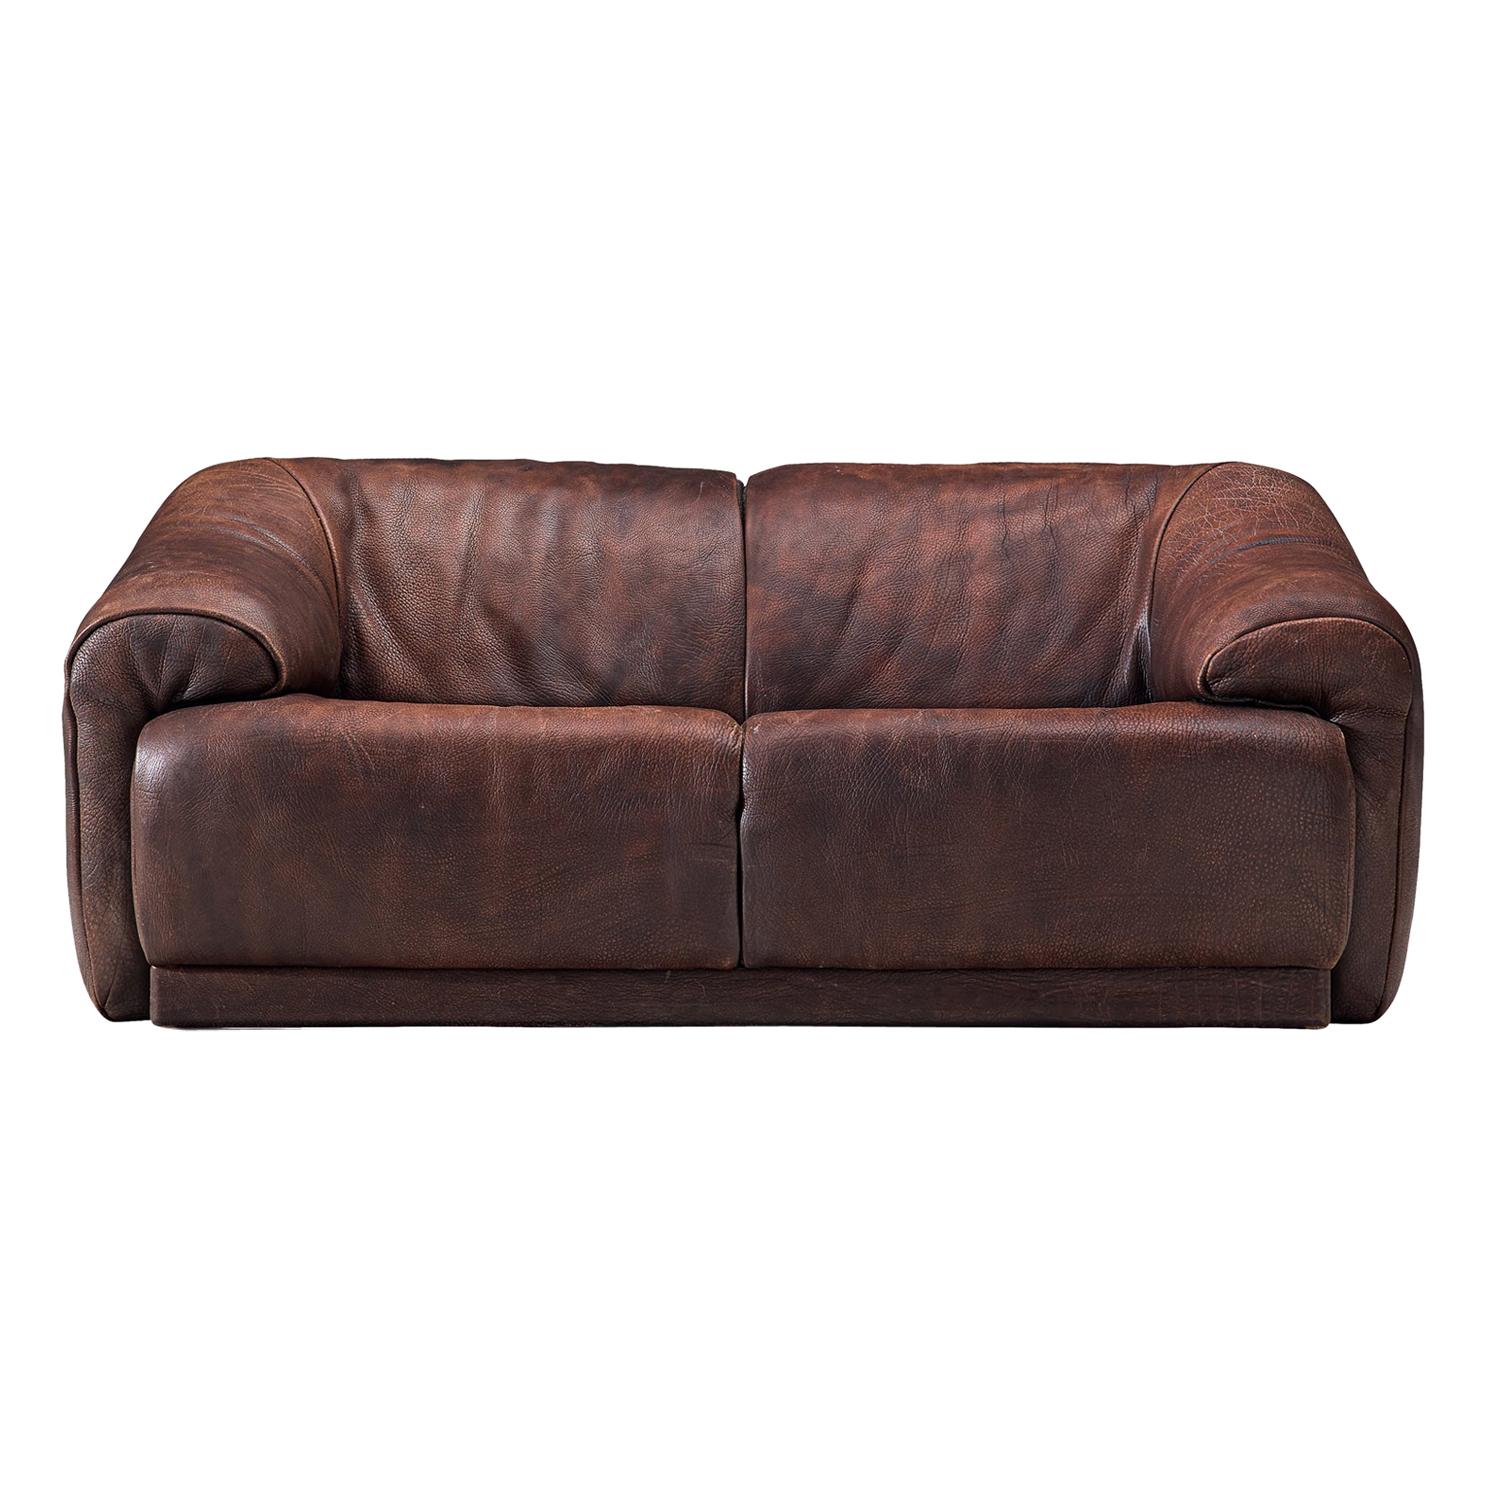 De Sede Two-Seat Sofa in Dark Brown Buffalo Leather